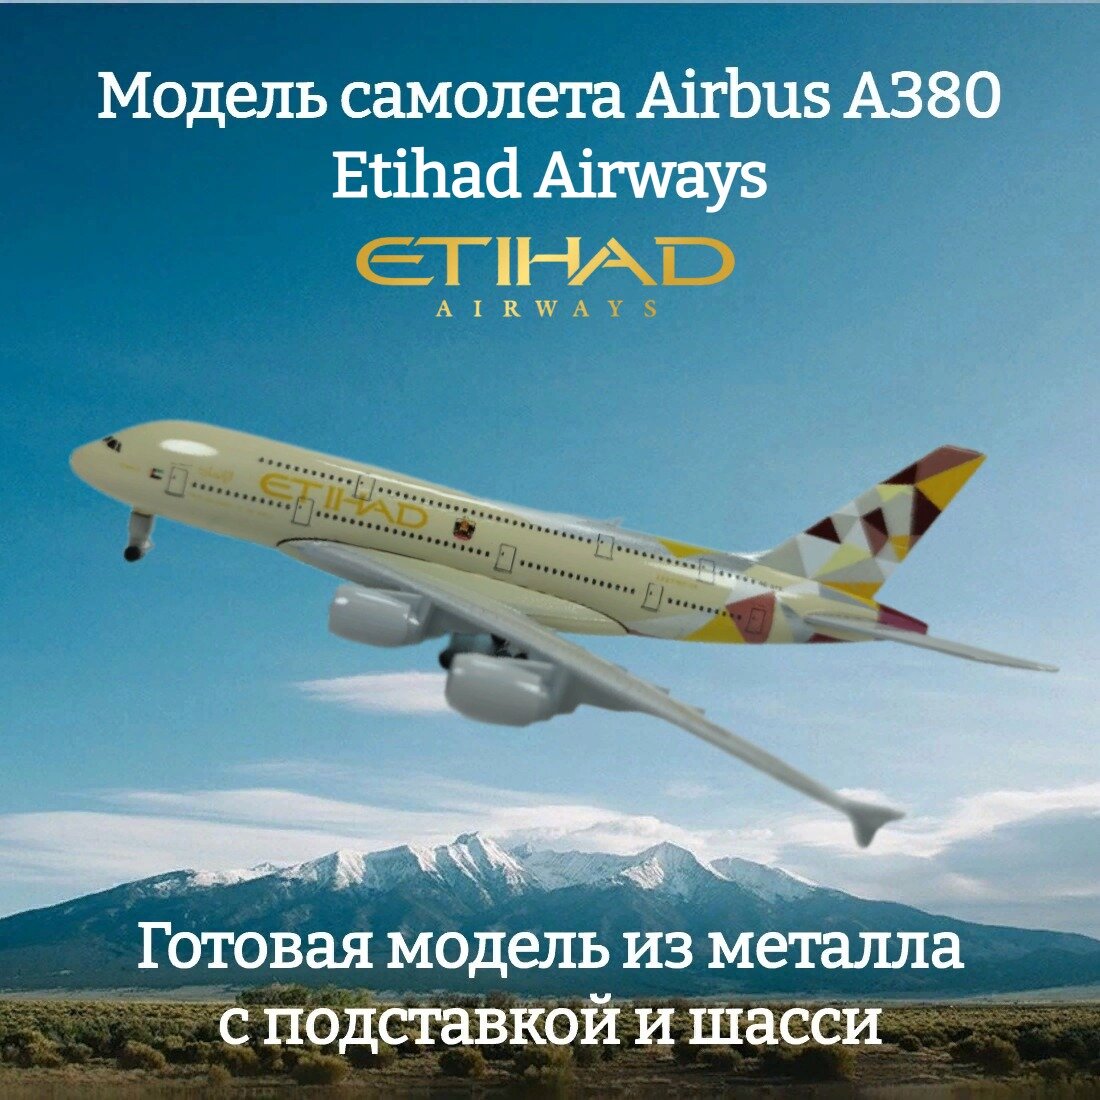 Модель самолета Airbus A380 Etihad Airways длина 19 см (с шасси)